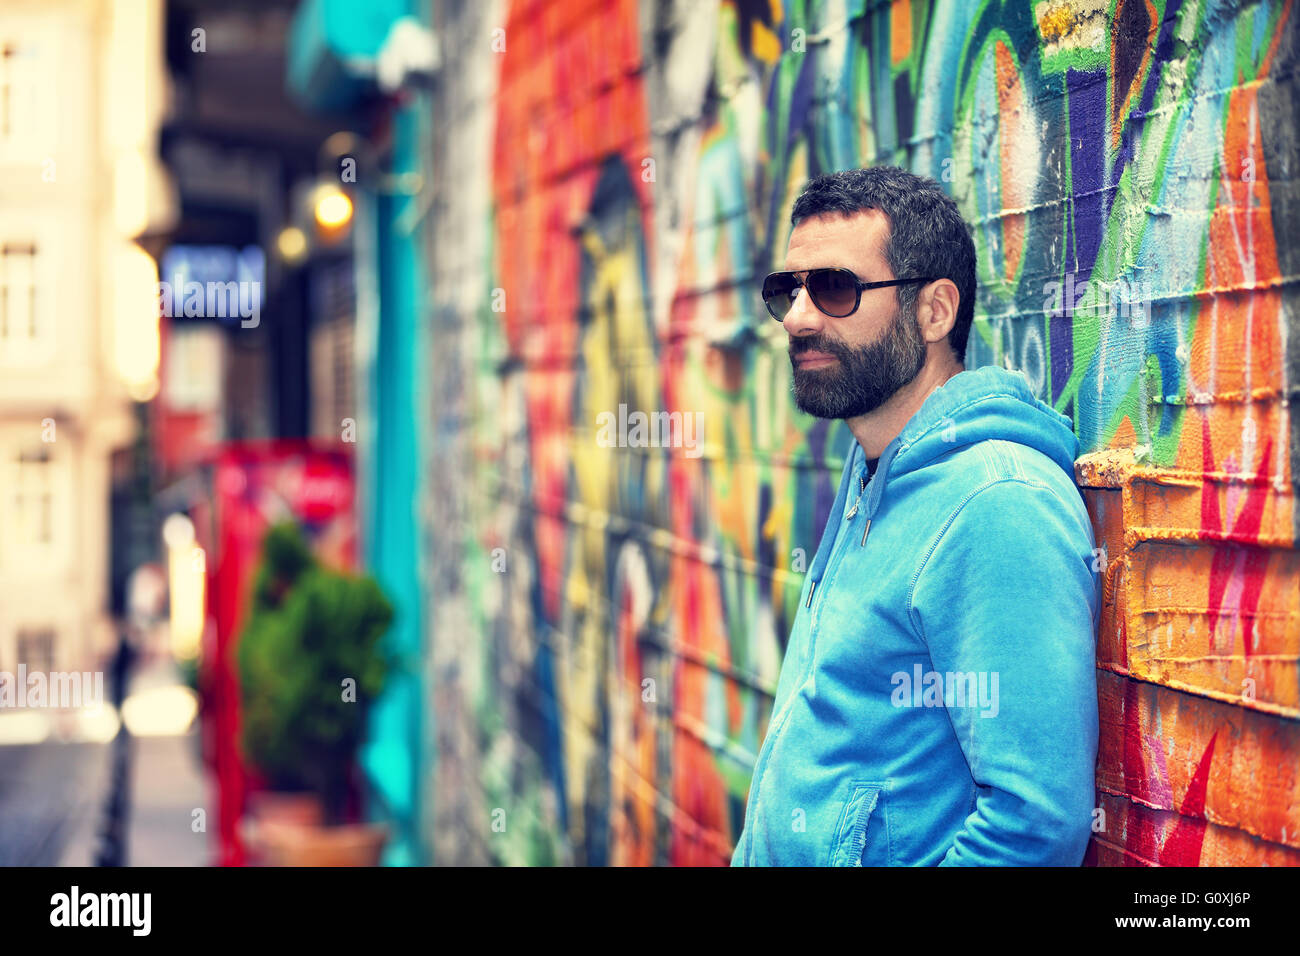 Bel homme portant des lunettes élégantes, debout près de beau mur coloré dans la rue, la mode style urbain, la vie en ville Banque D'Images